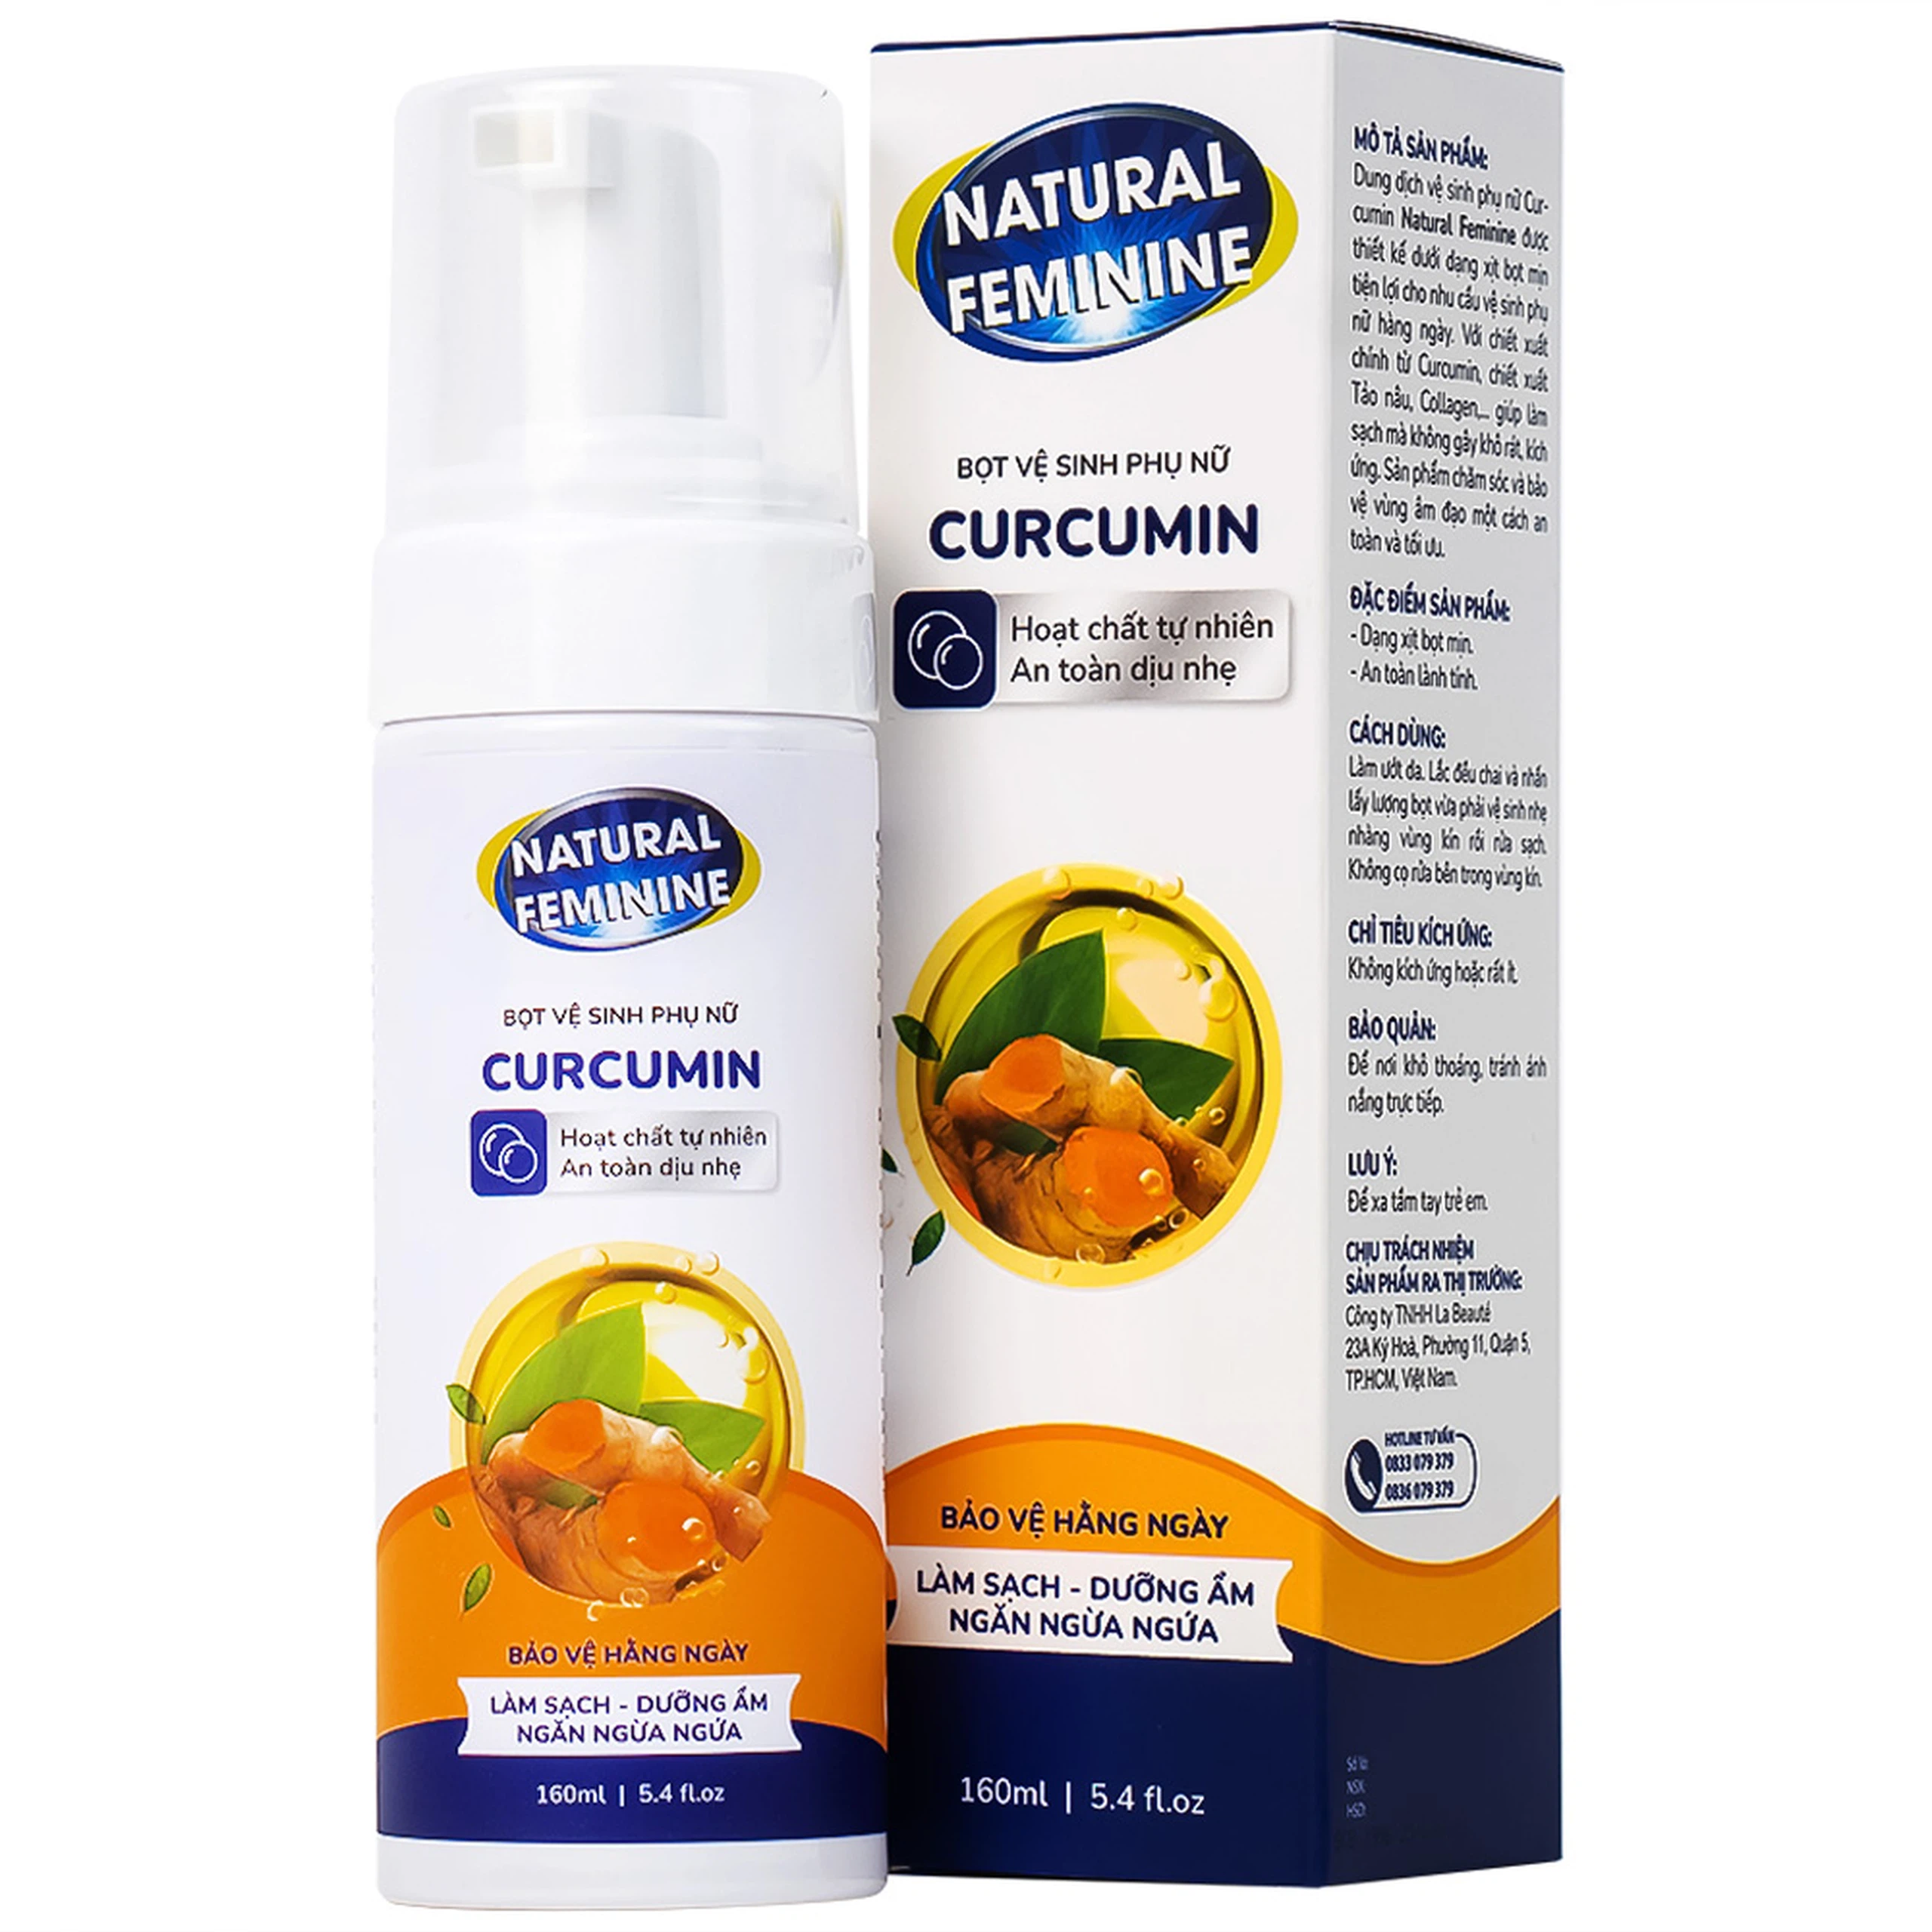 Bọt vệ sinh phụ nữ Curcumin Natural Feminine làm sạch, dưỡng ẩm, ngăn ngừa ngứa (160ml)